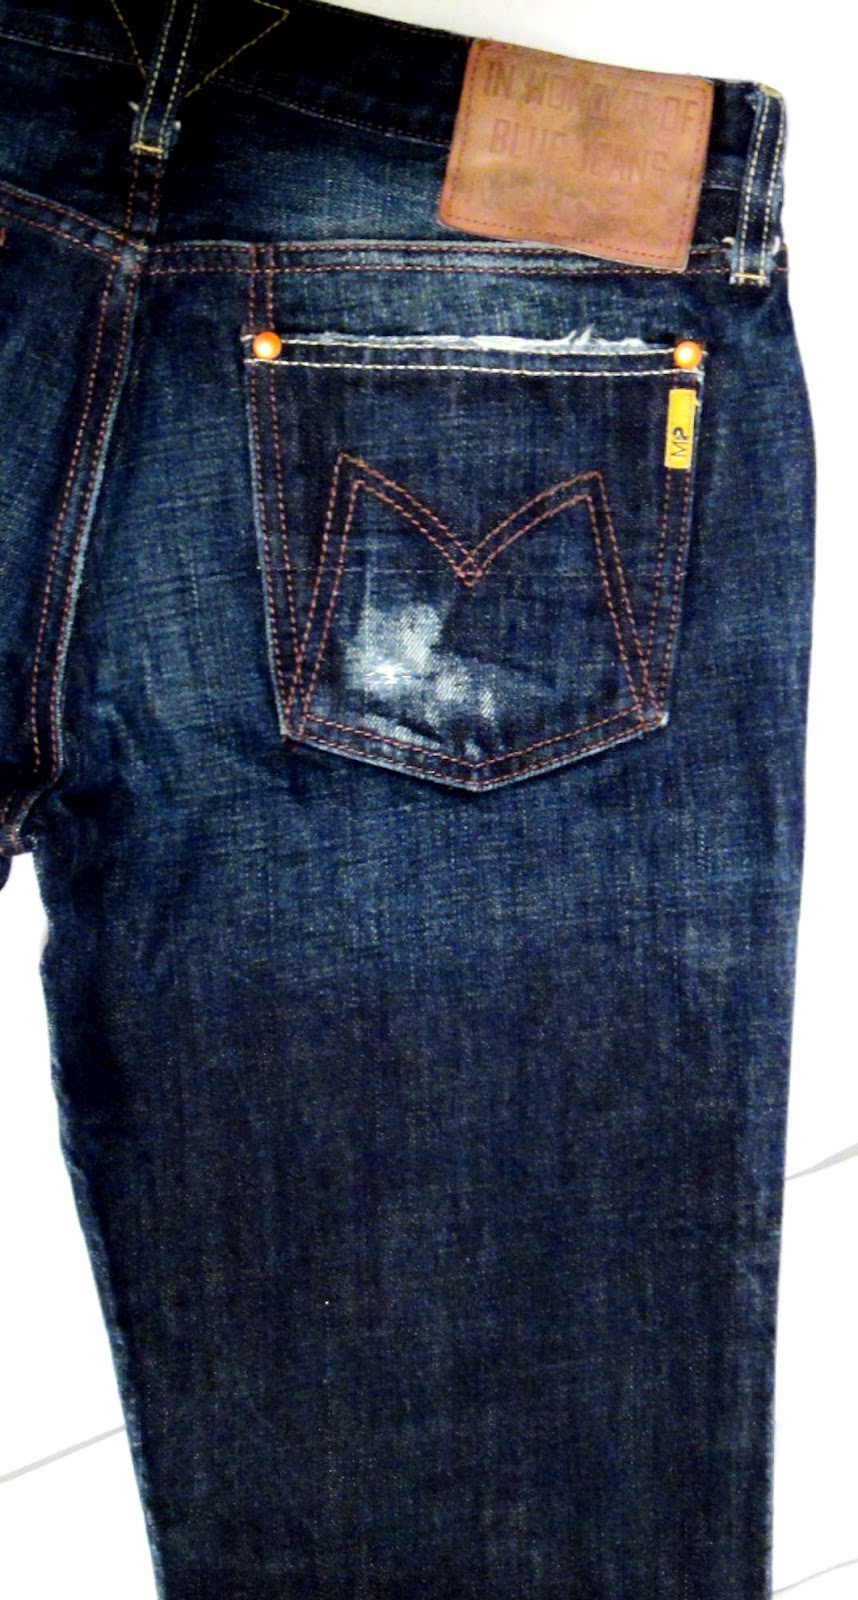 Pre-Owned Top-Shelf Designer Jeans: More Meltin Pot Jeans....